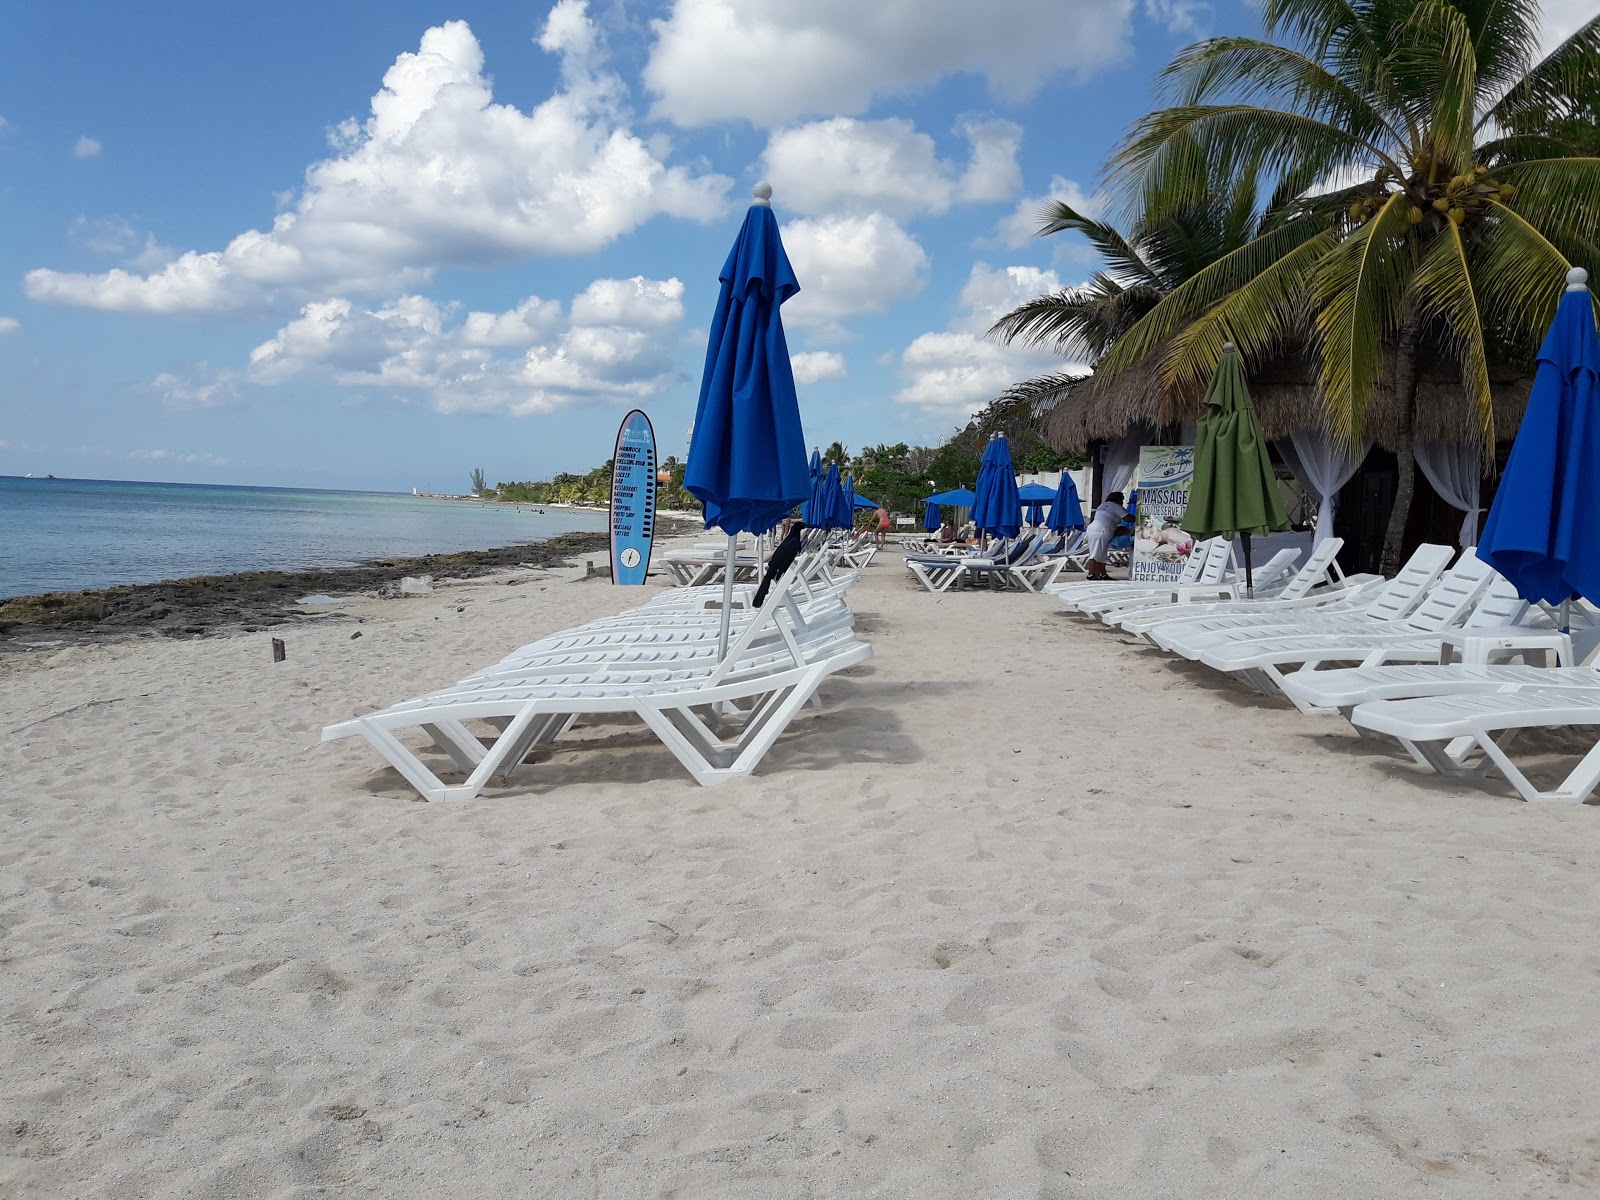 Foto von Playa Uvas - beliebter Ort unter Entspannungskennern